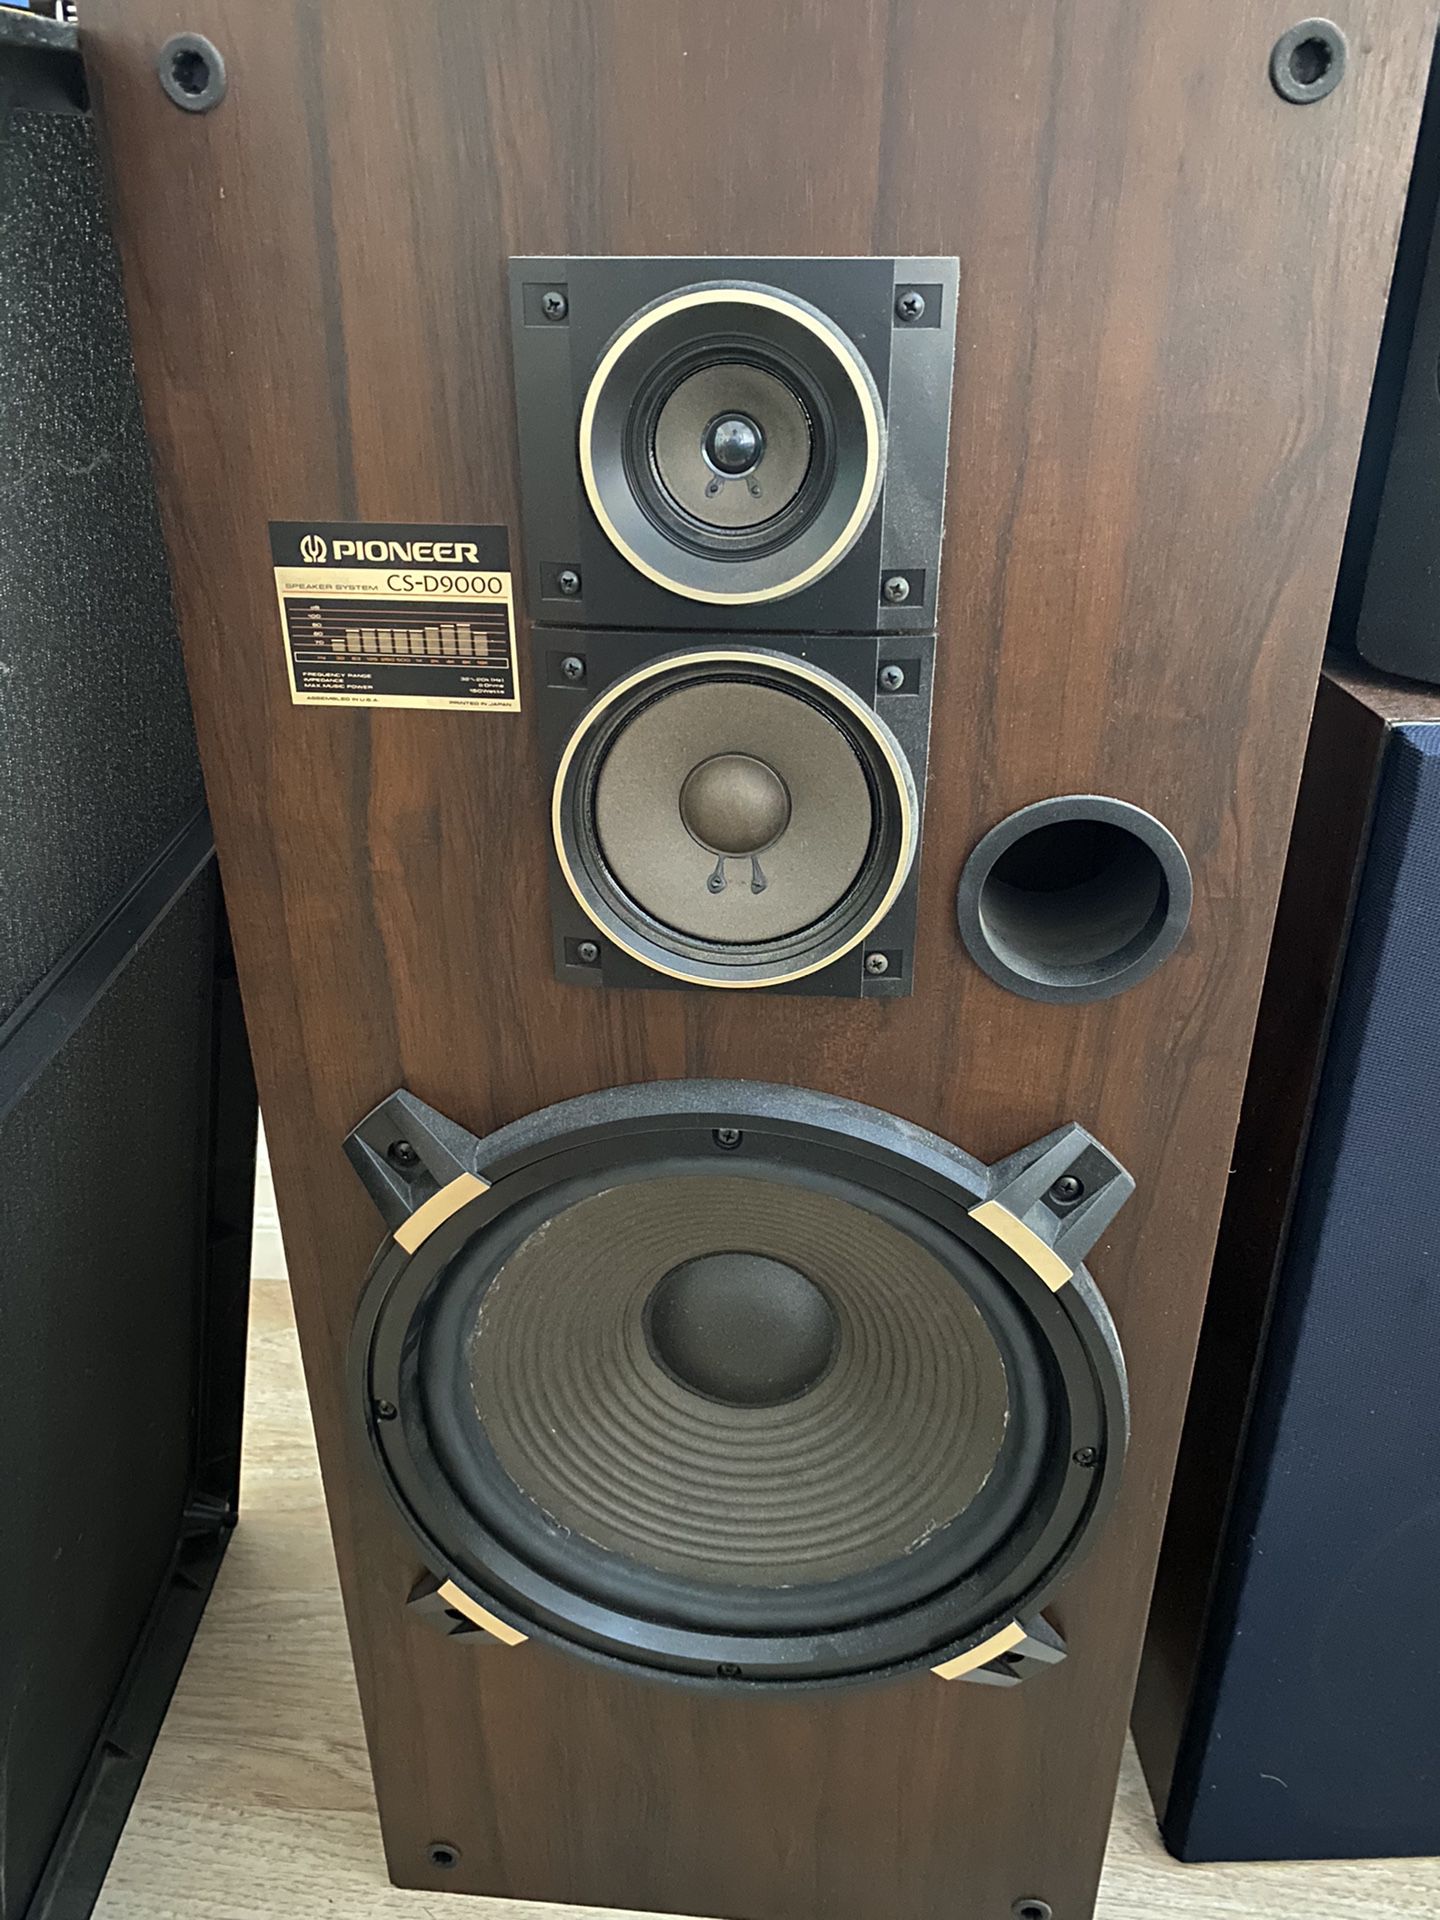 Vintage Speaker and Reel to reel player